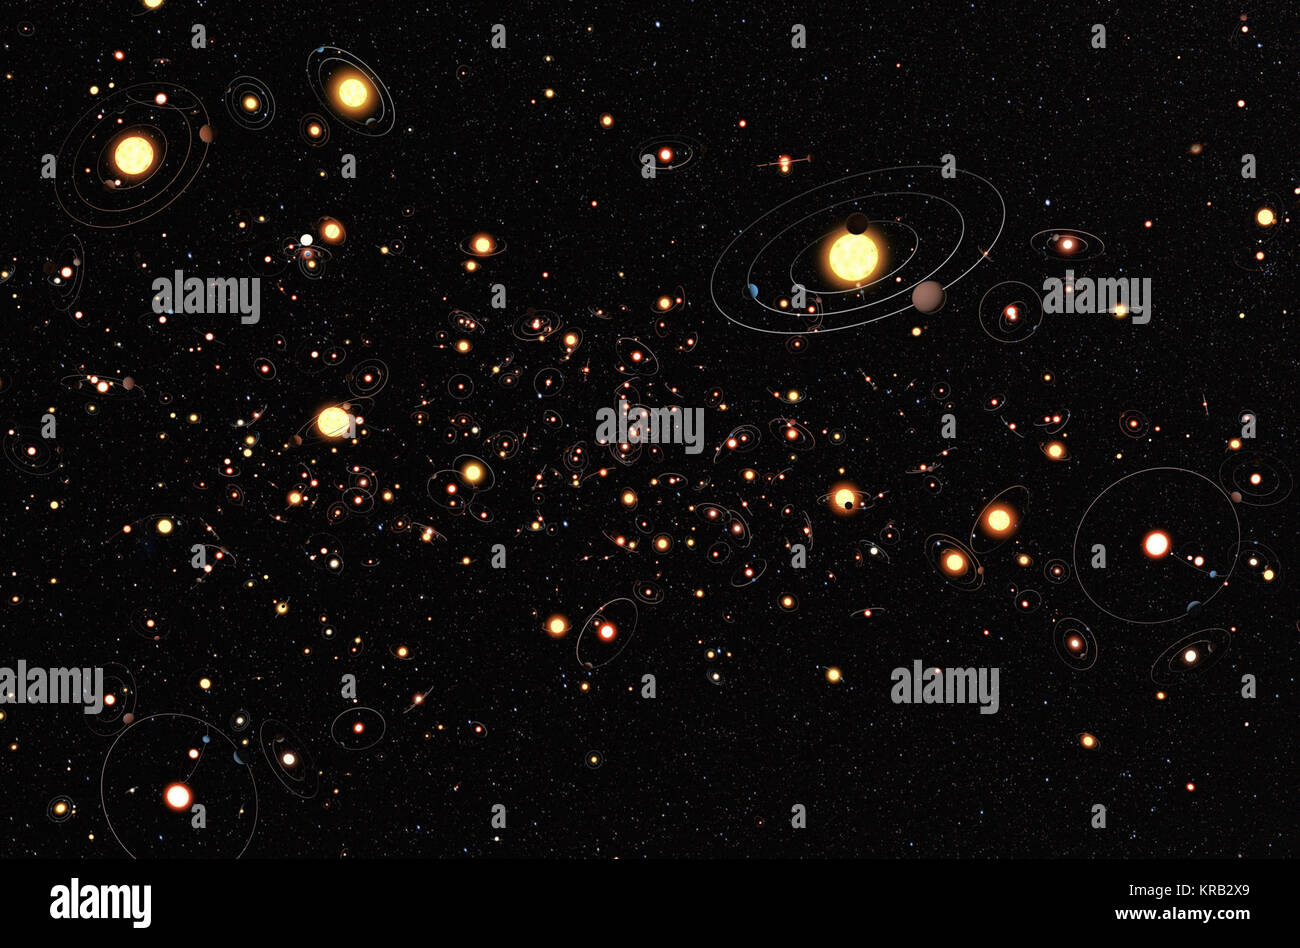 Cette caricature de l'artiste vue donne une impression de la façon dont les planètes sont autour de l'étoile dans la Voie lactée. Les planètes, leurs orbites et leur étoile hôte sont tous grandement amplifiés par rapport à leurs véritables séparations. Une recherche de six ans auprès de millions d'étoiles à l'aide de la technique de MICROLENTILLE GRAVITATIONNELLE a conclu que des planètes autour des étoiles sont la règle plutôt que l'exception. Le nombre moyen de planètes par étoile est supérieur à un. Voie Lactée (100 milliards d'étoiles Banque D'Images